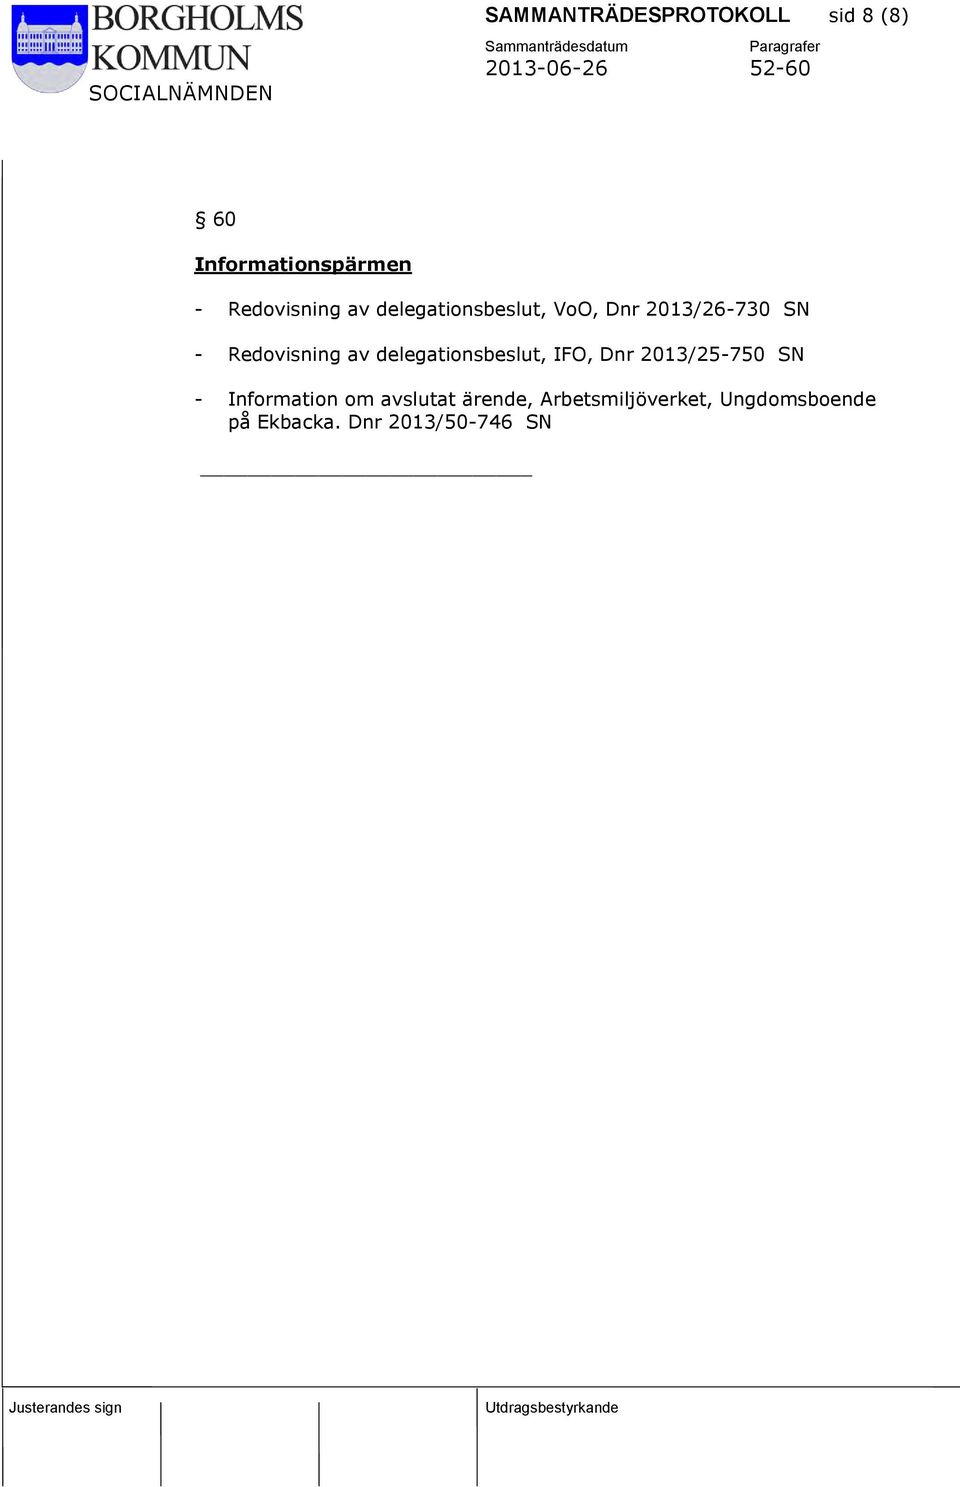 delegationsbeslut, IFO, Dnr 2013/25-750 SN - Information om